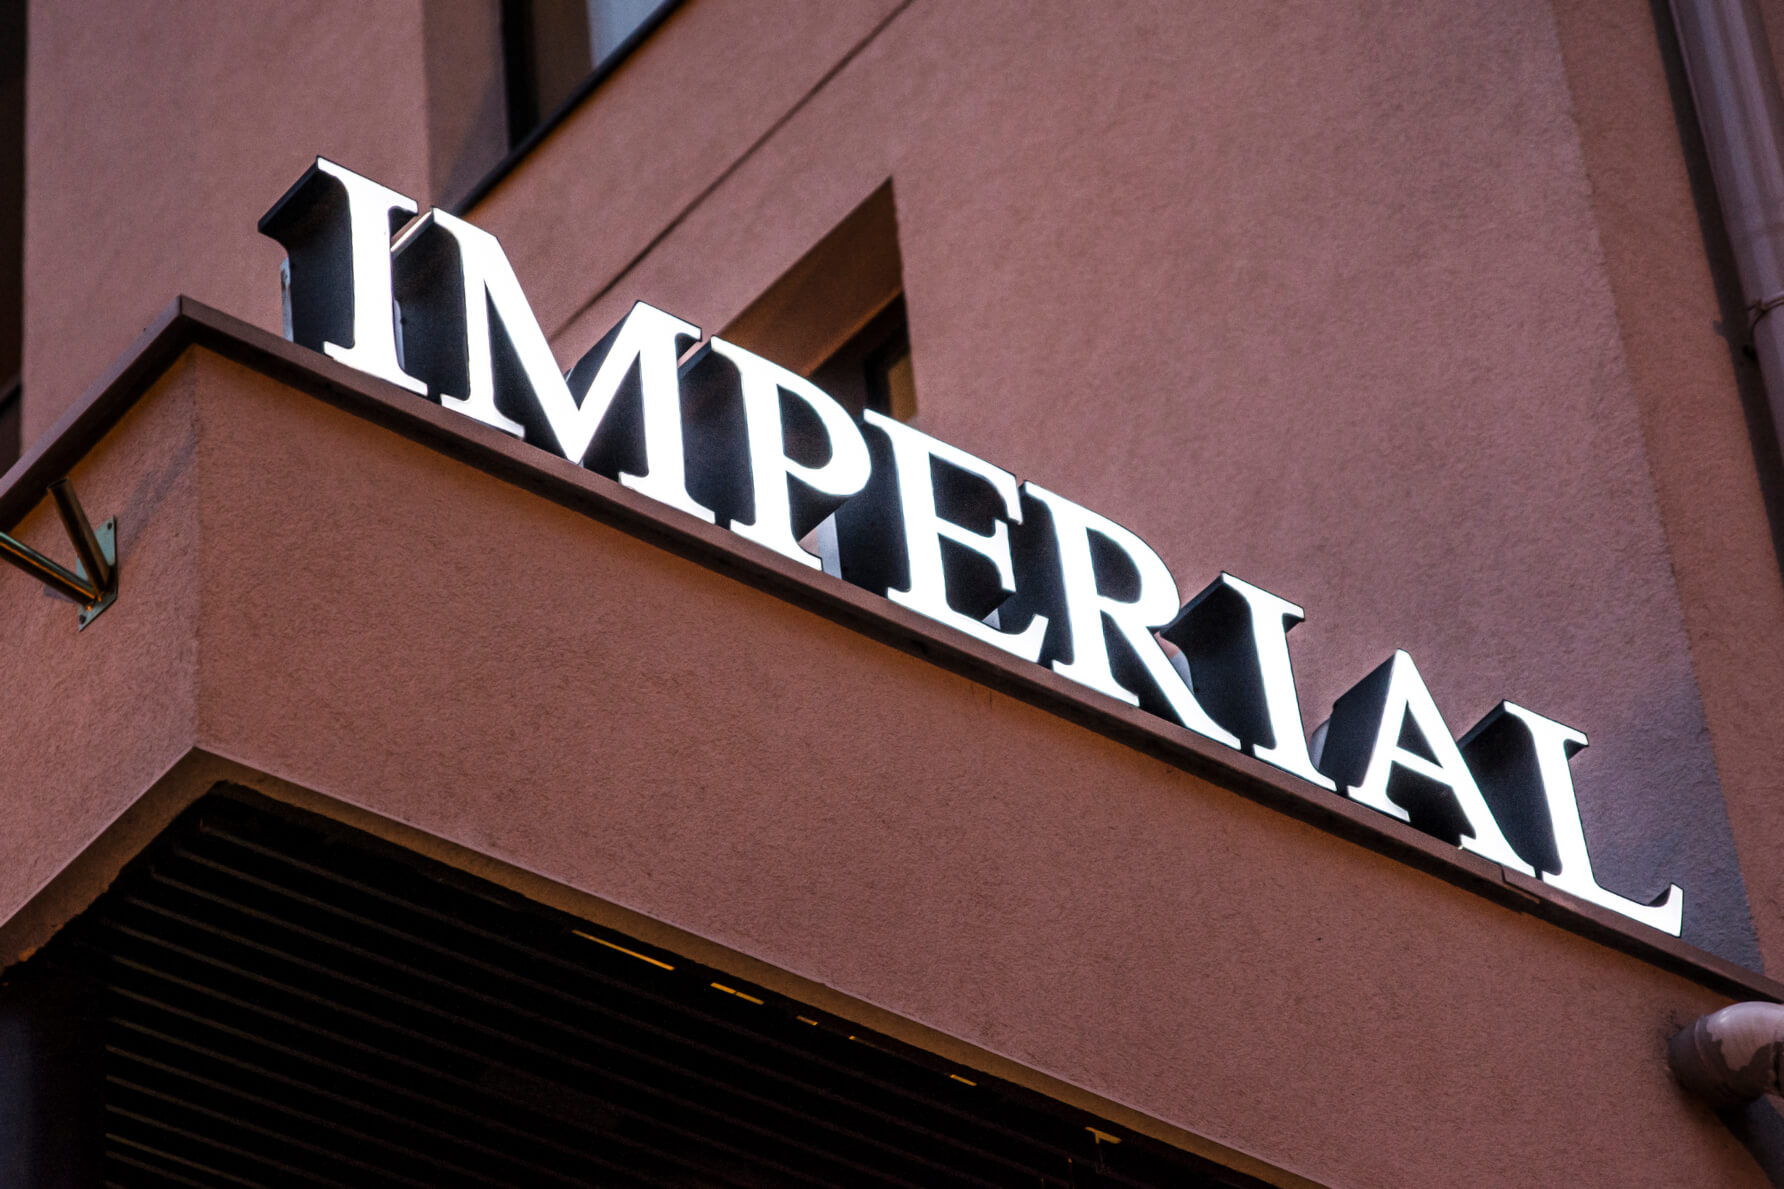 Imperial - Hotel Imperial - Letras LED Spatial en la pared